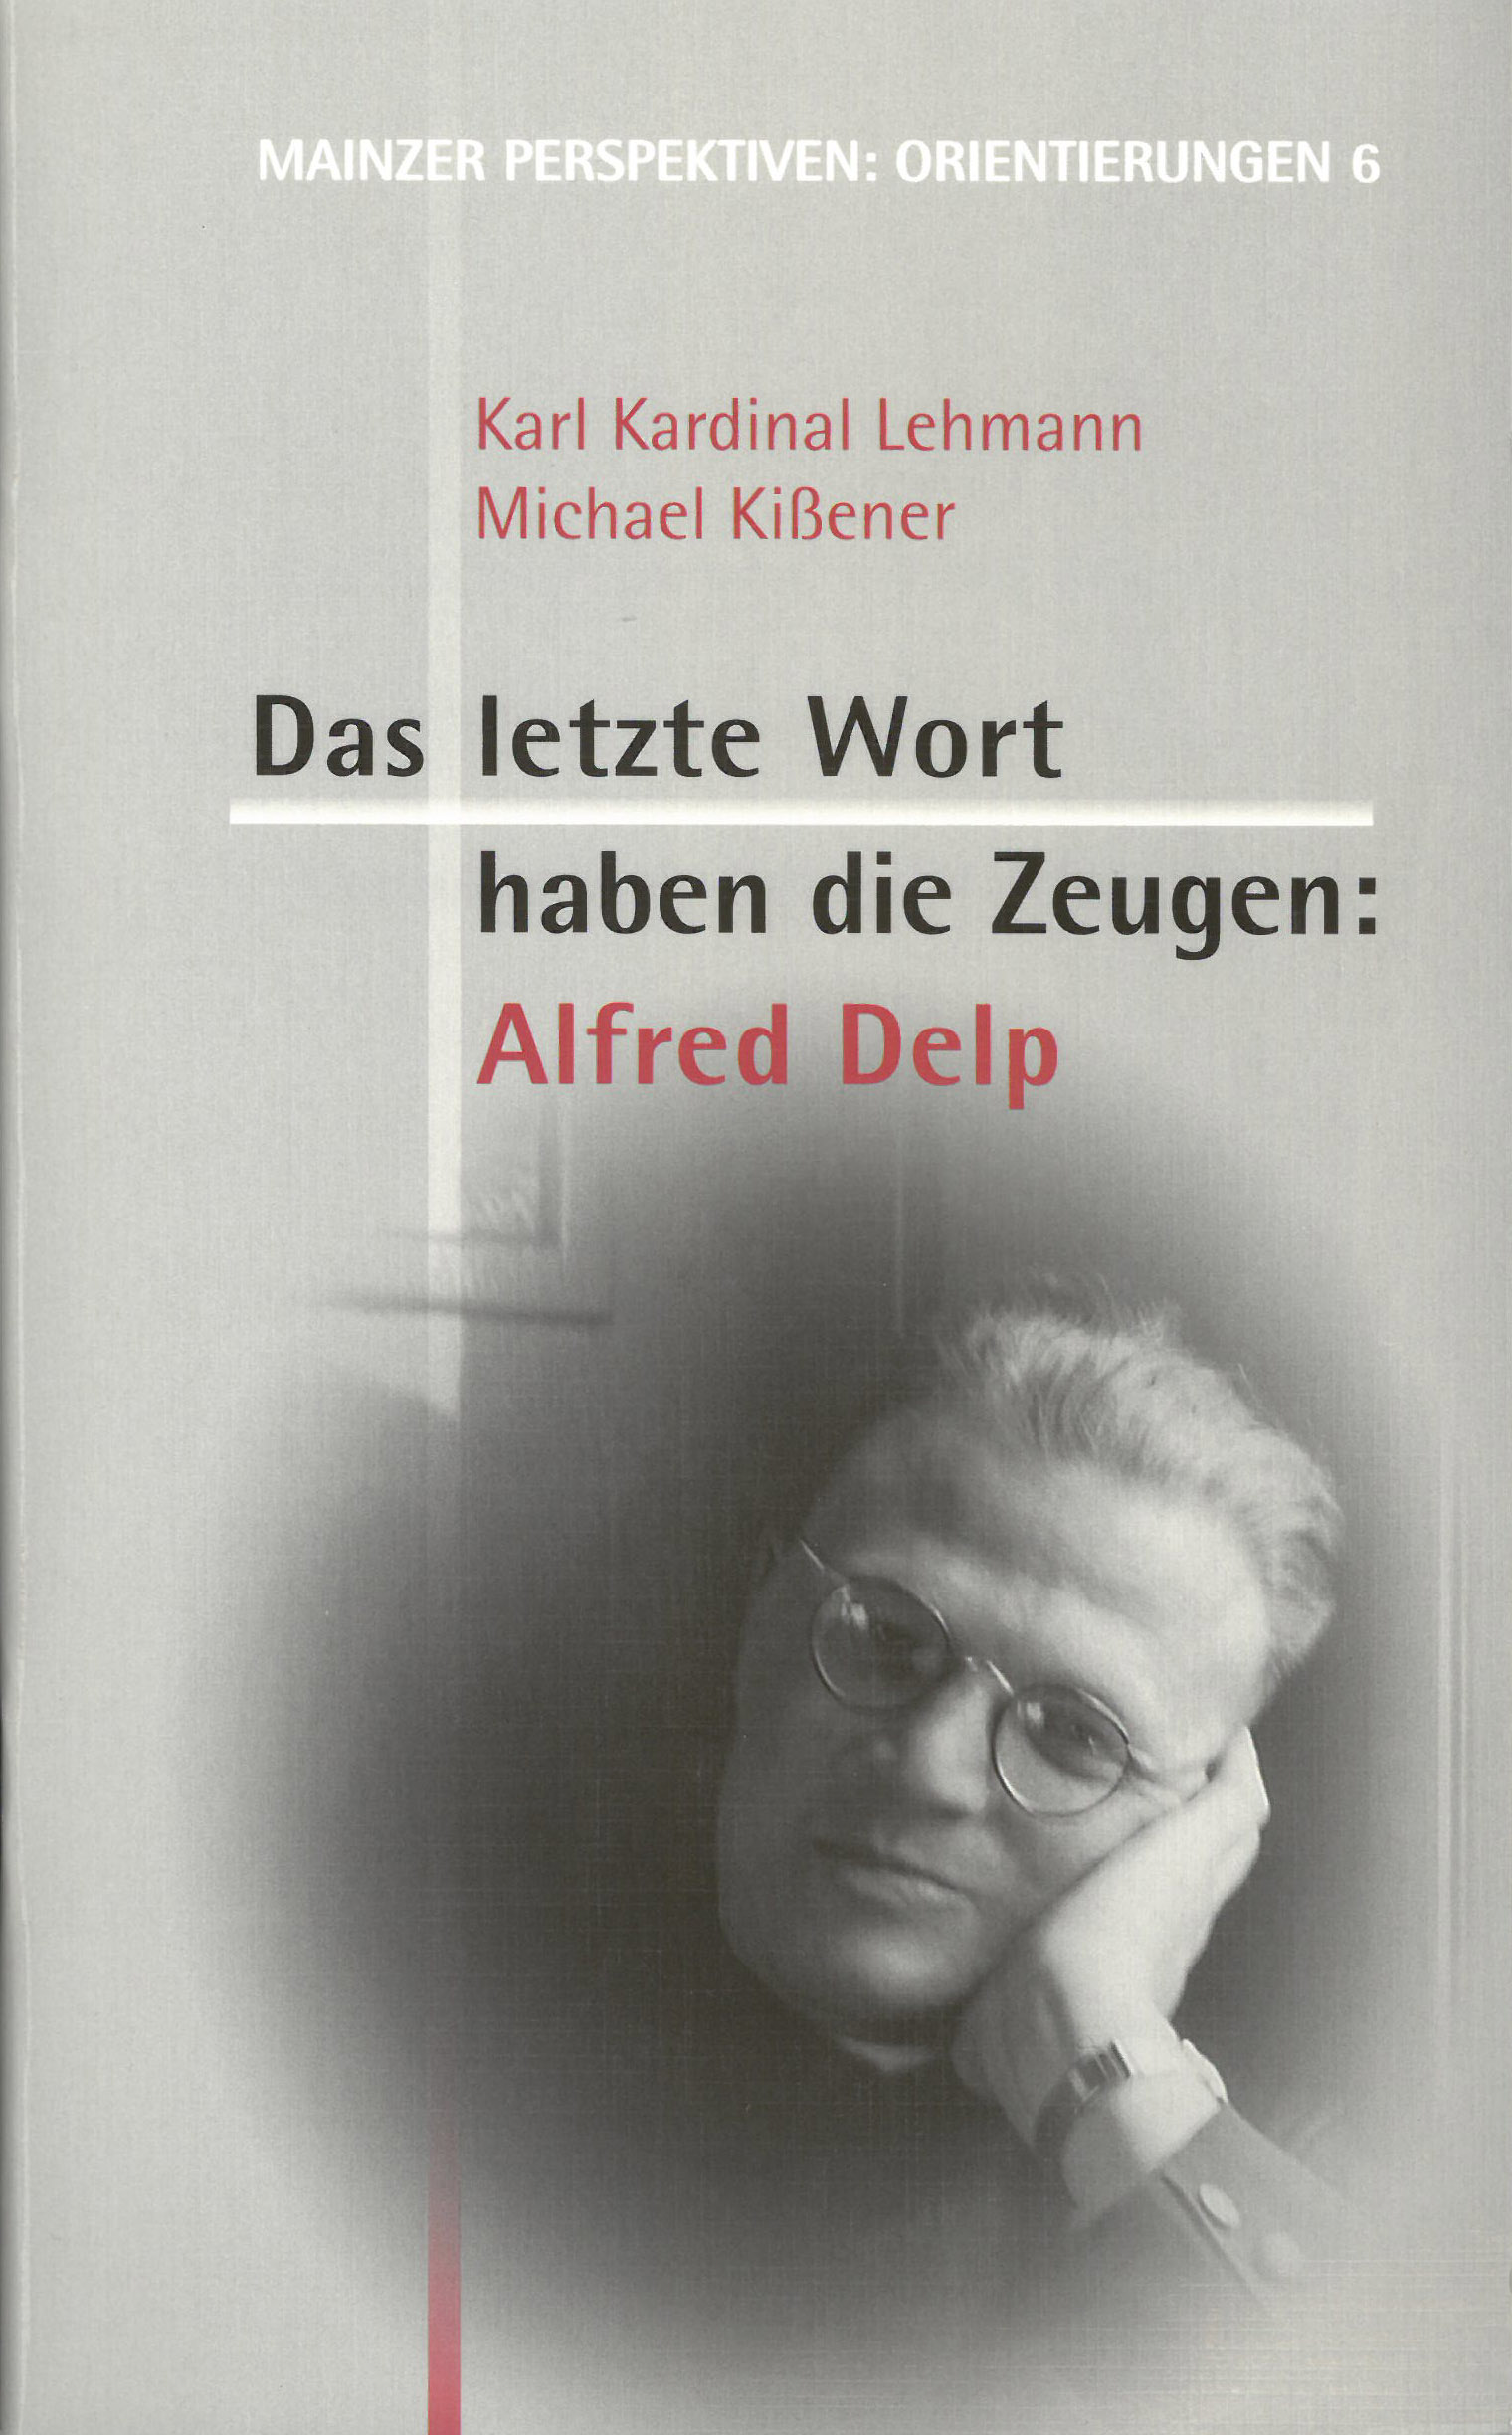 Alfred Delp